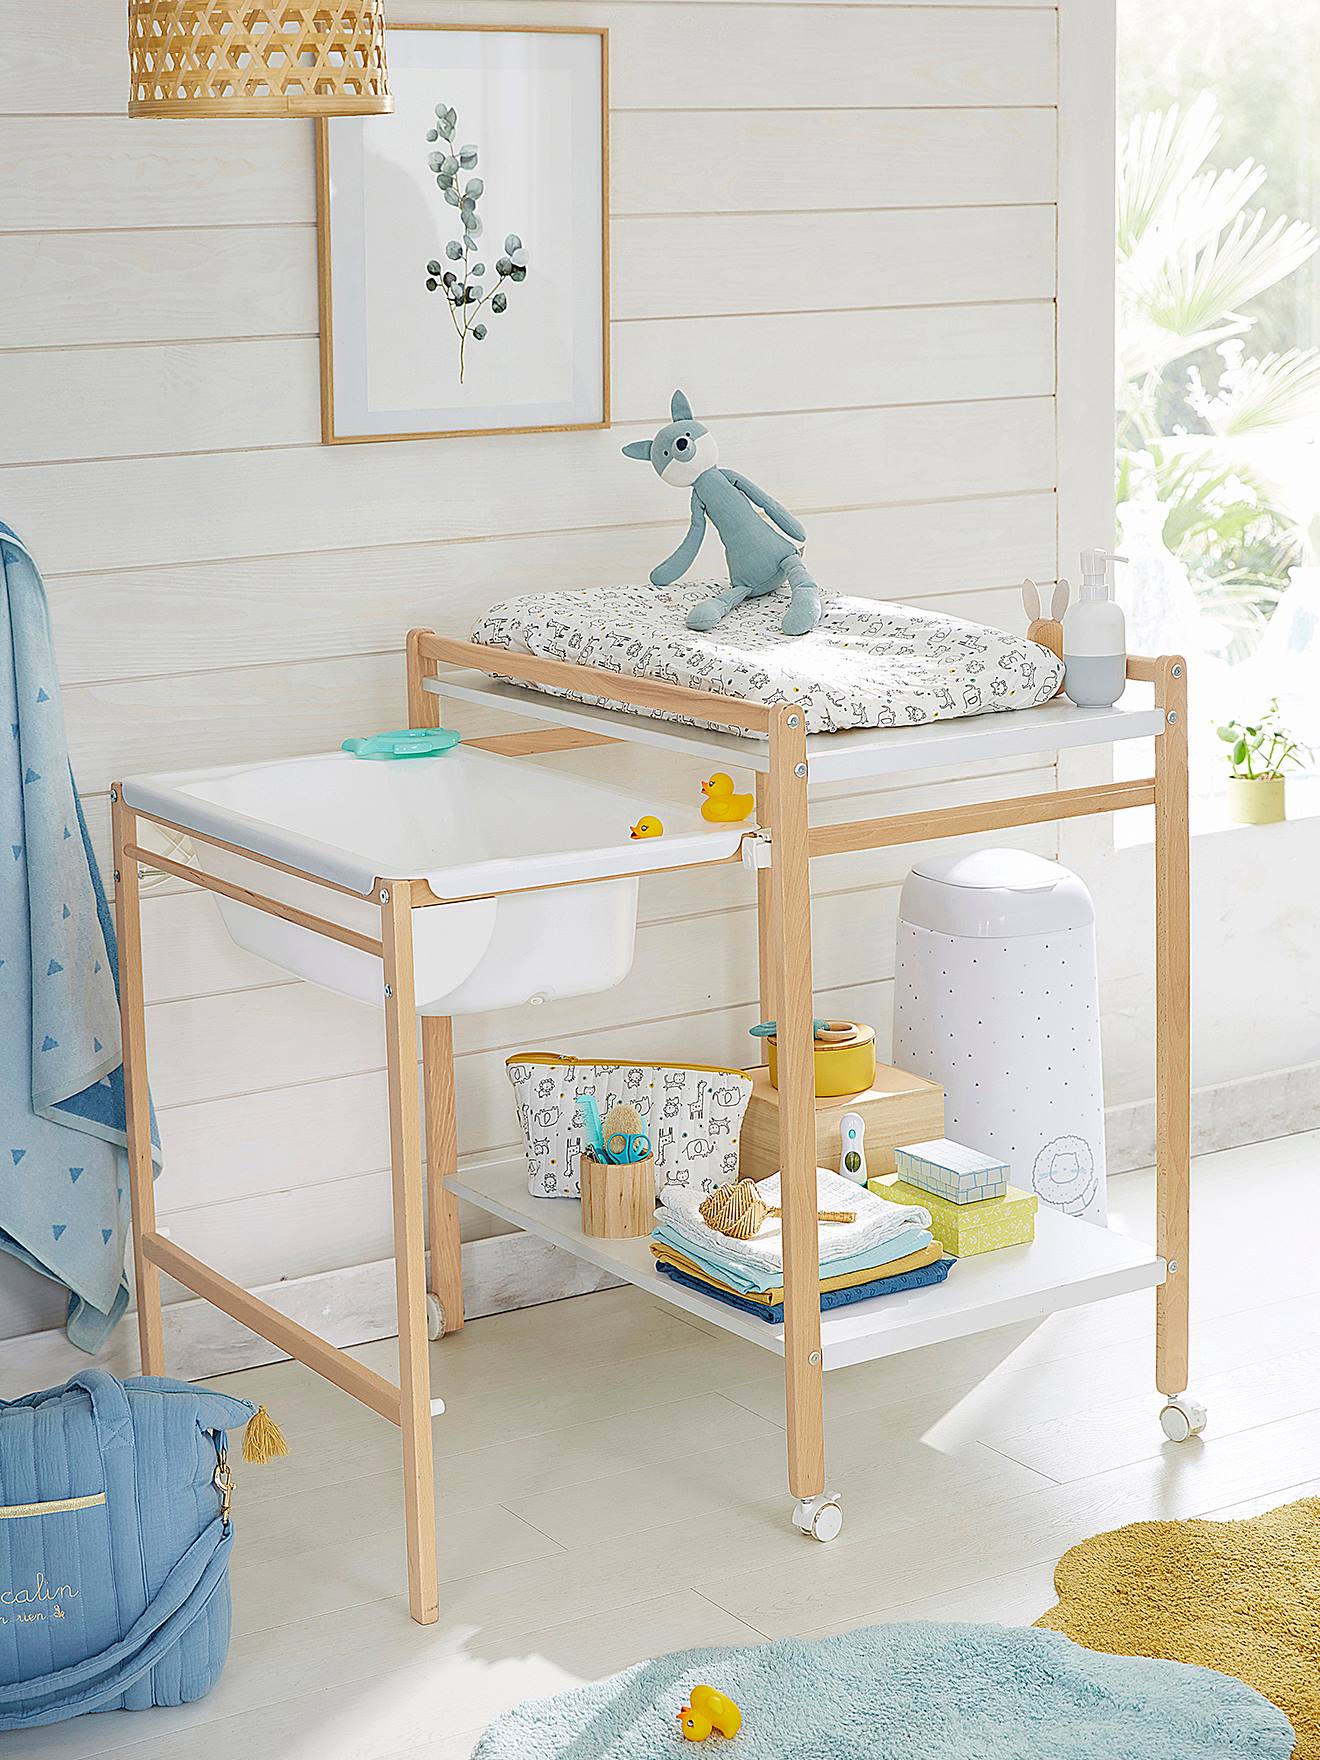 Table à langer et baignoire à roulettes intégrée - Bois blanc – BellyStar